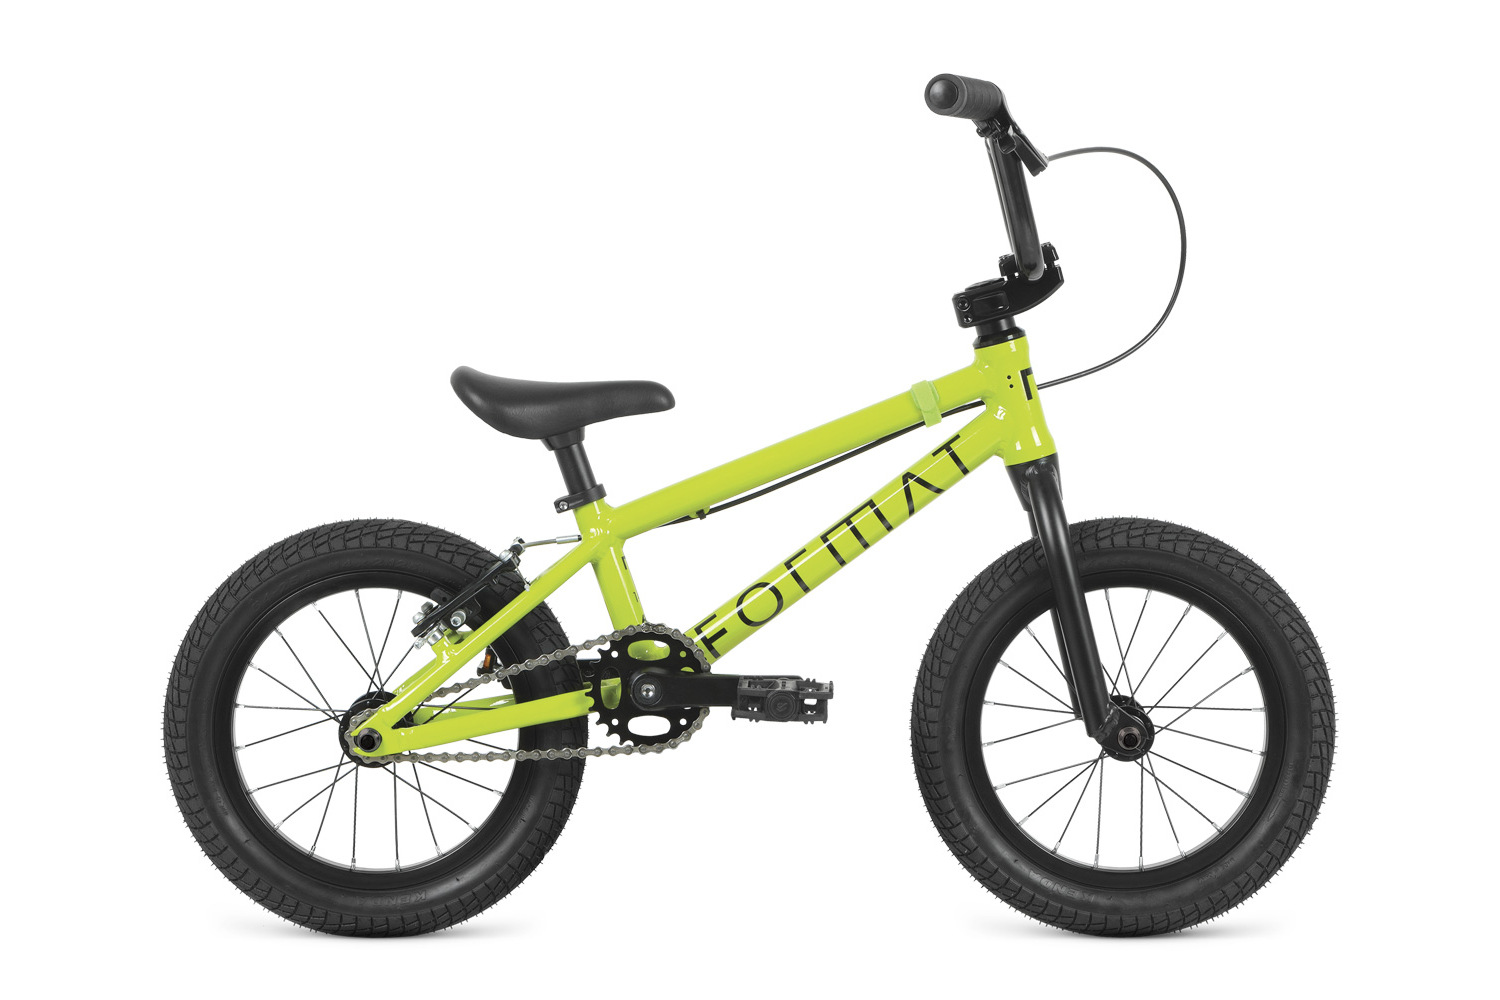 Детский велосипед Format Kids BMX 14, год 2022, цвет Зеленый